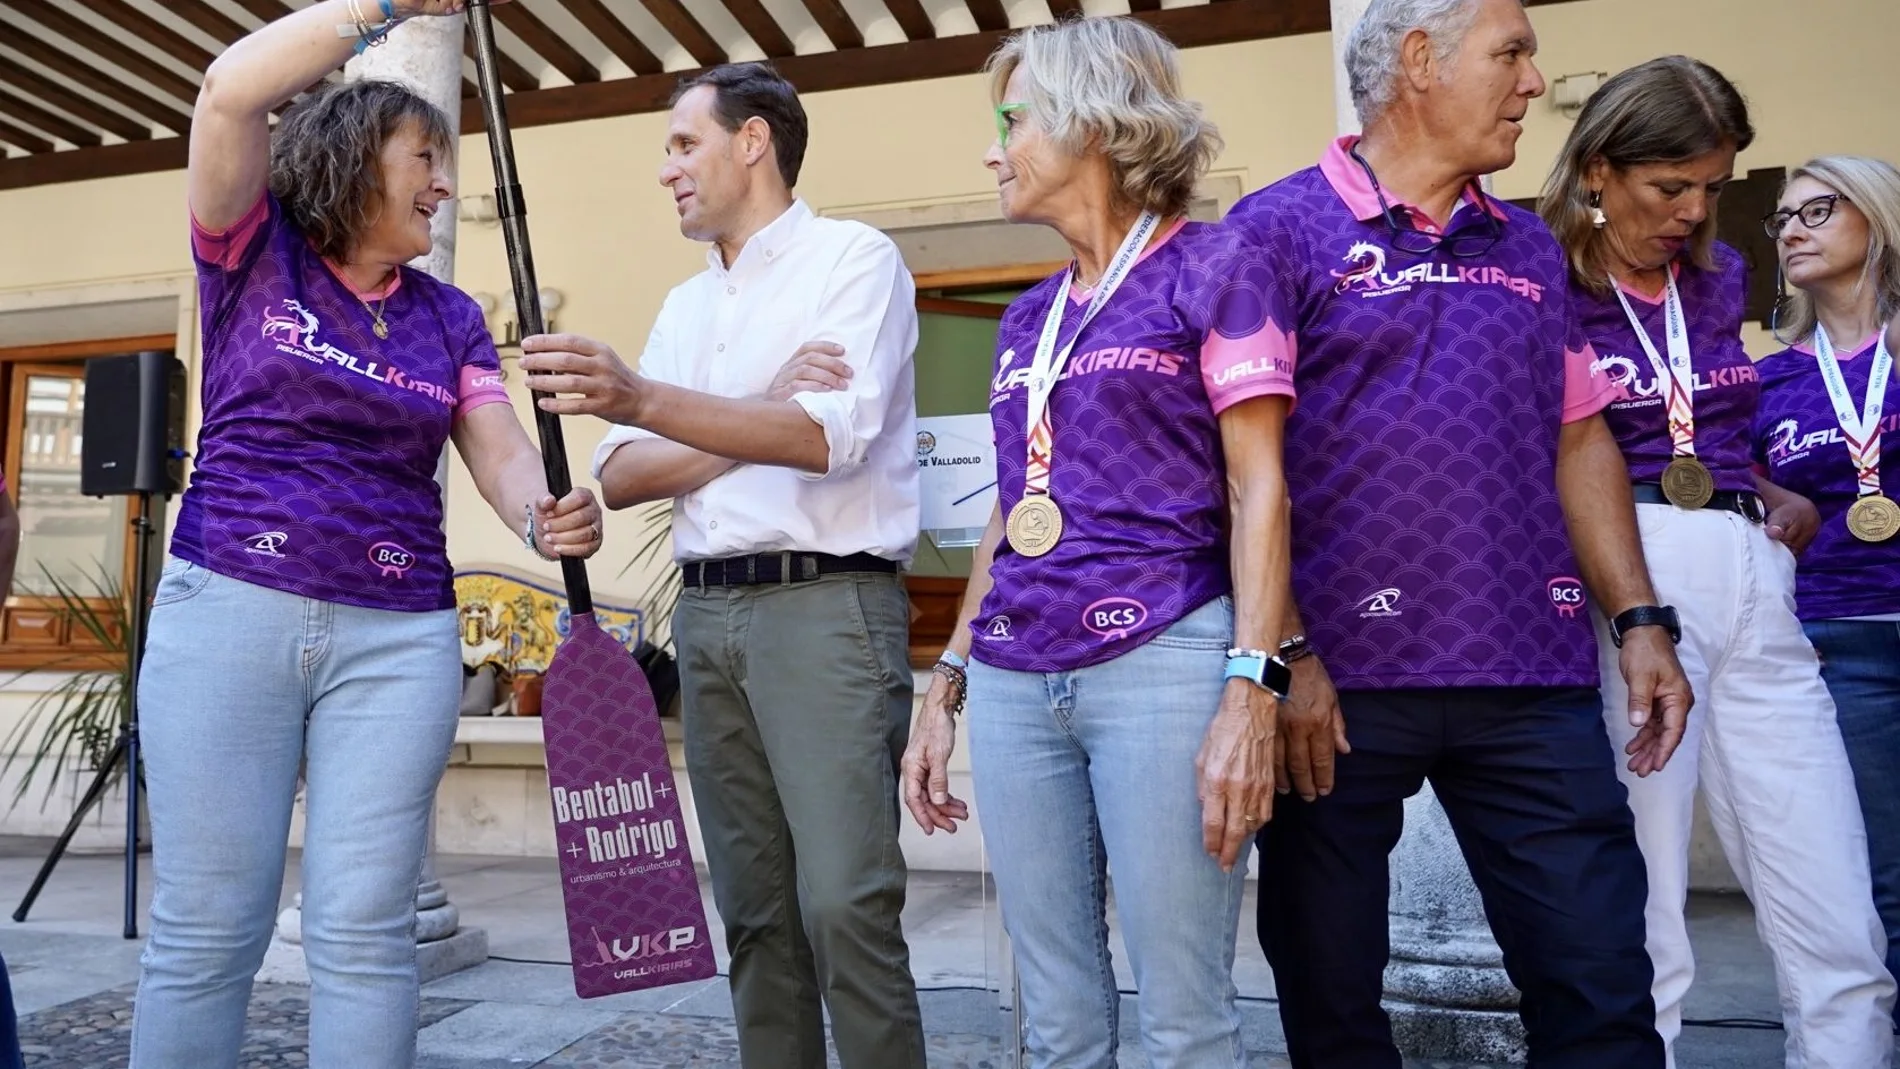 La Diputación de Valladolid homenajea a Vallkirias del Pisuerga por su Medalla de Oro en el Campeonato Nacional de Piragüismo